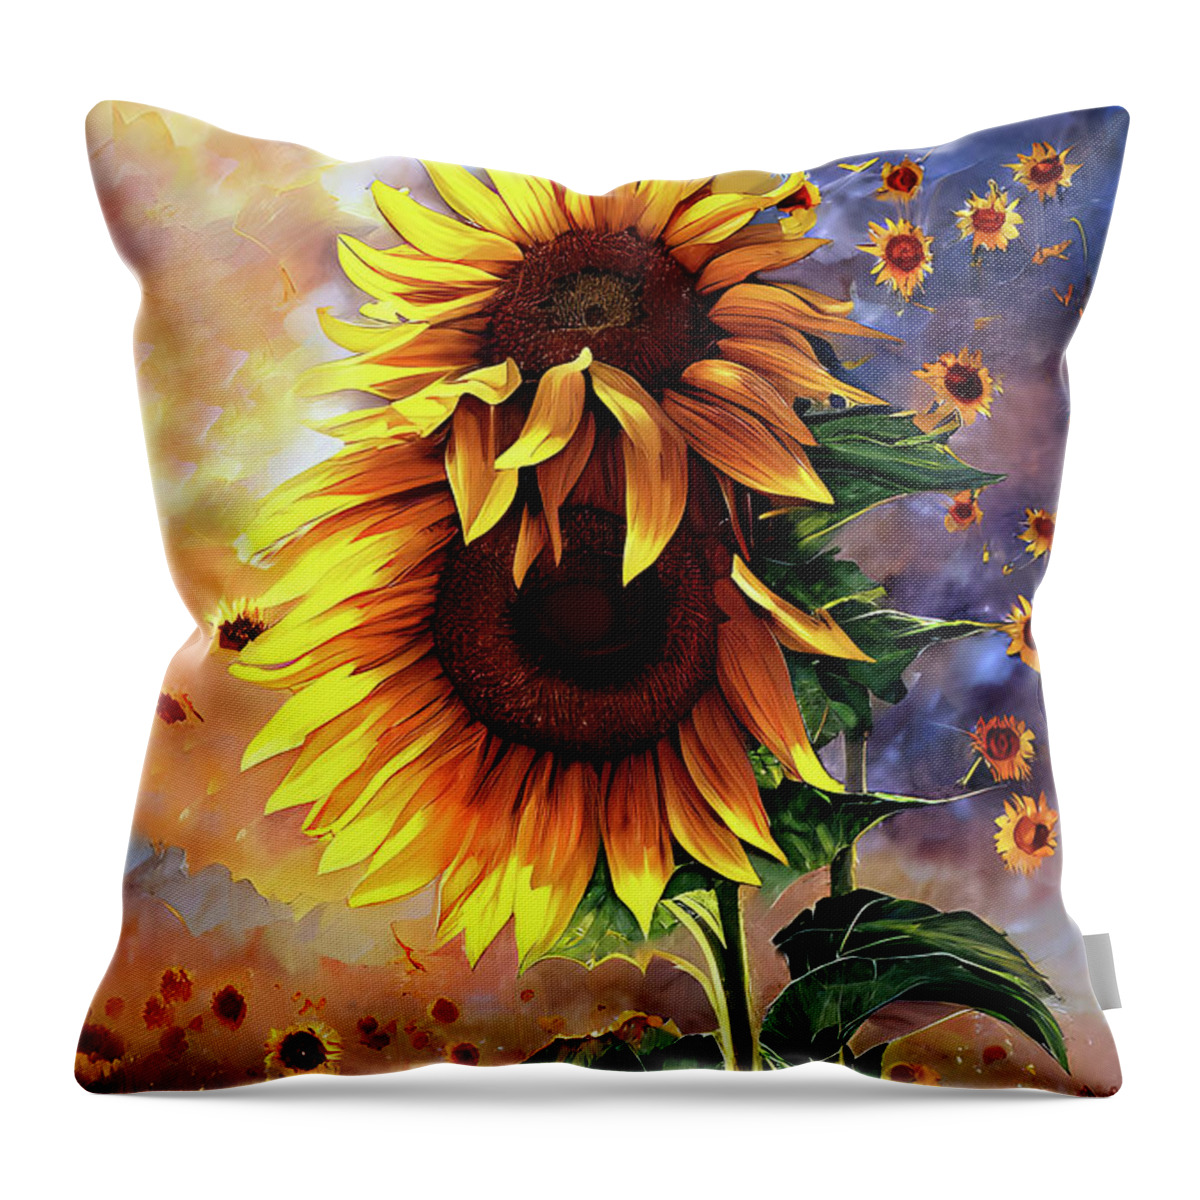 Summer Throw Pillow featuring the digital art A Sunflower Hug by Elaine Manley